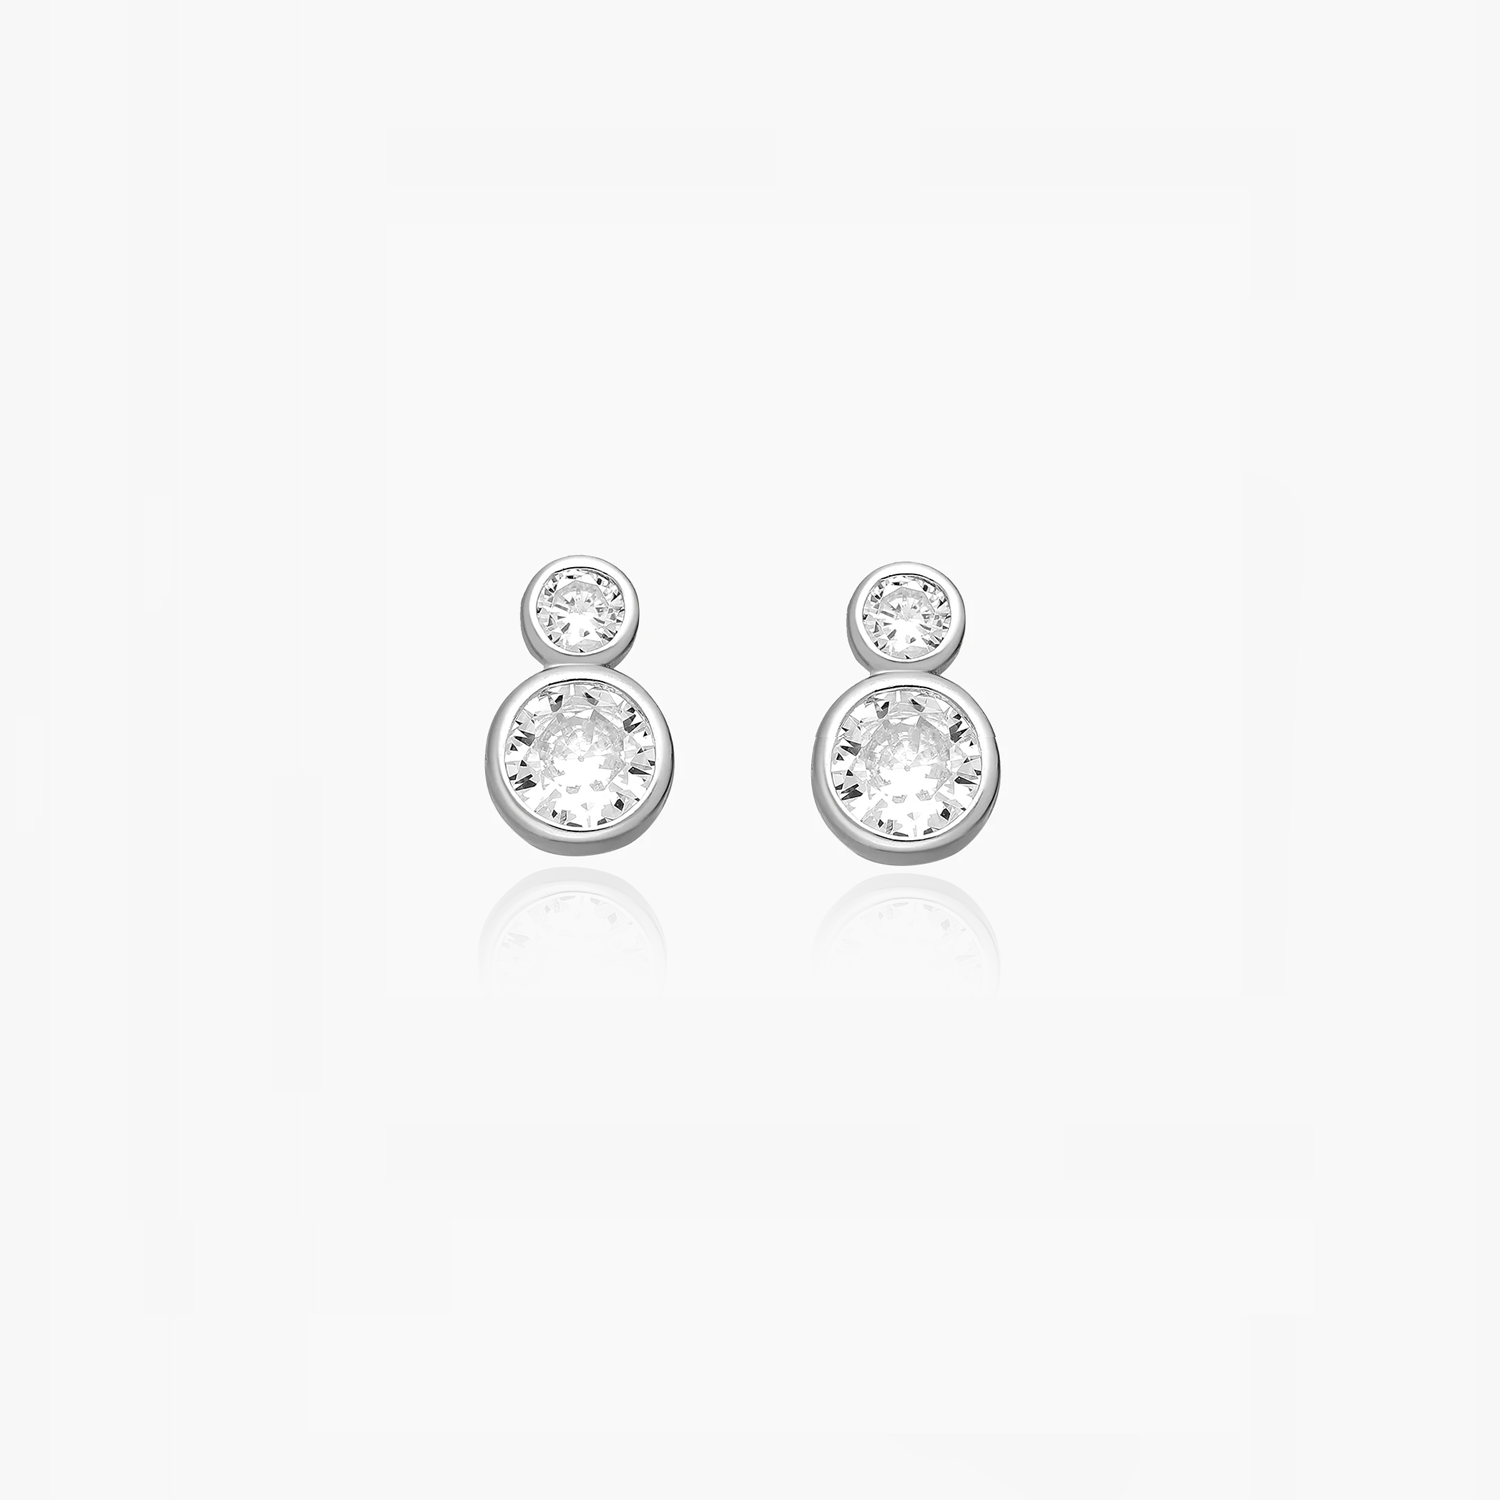 Double stone silver earrings